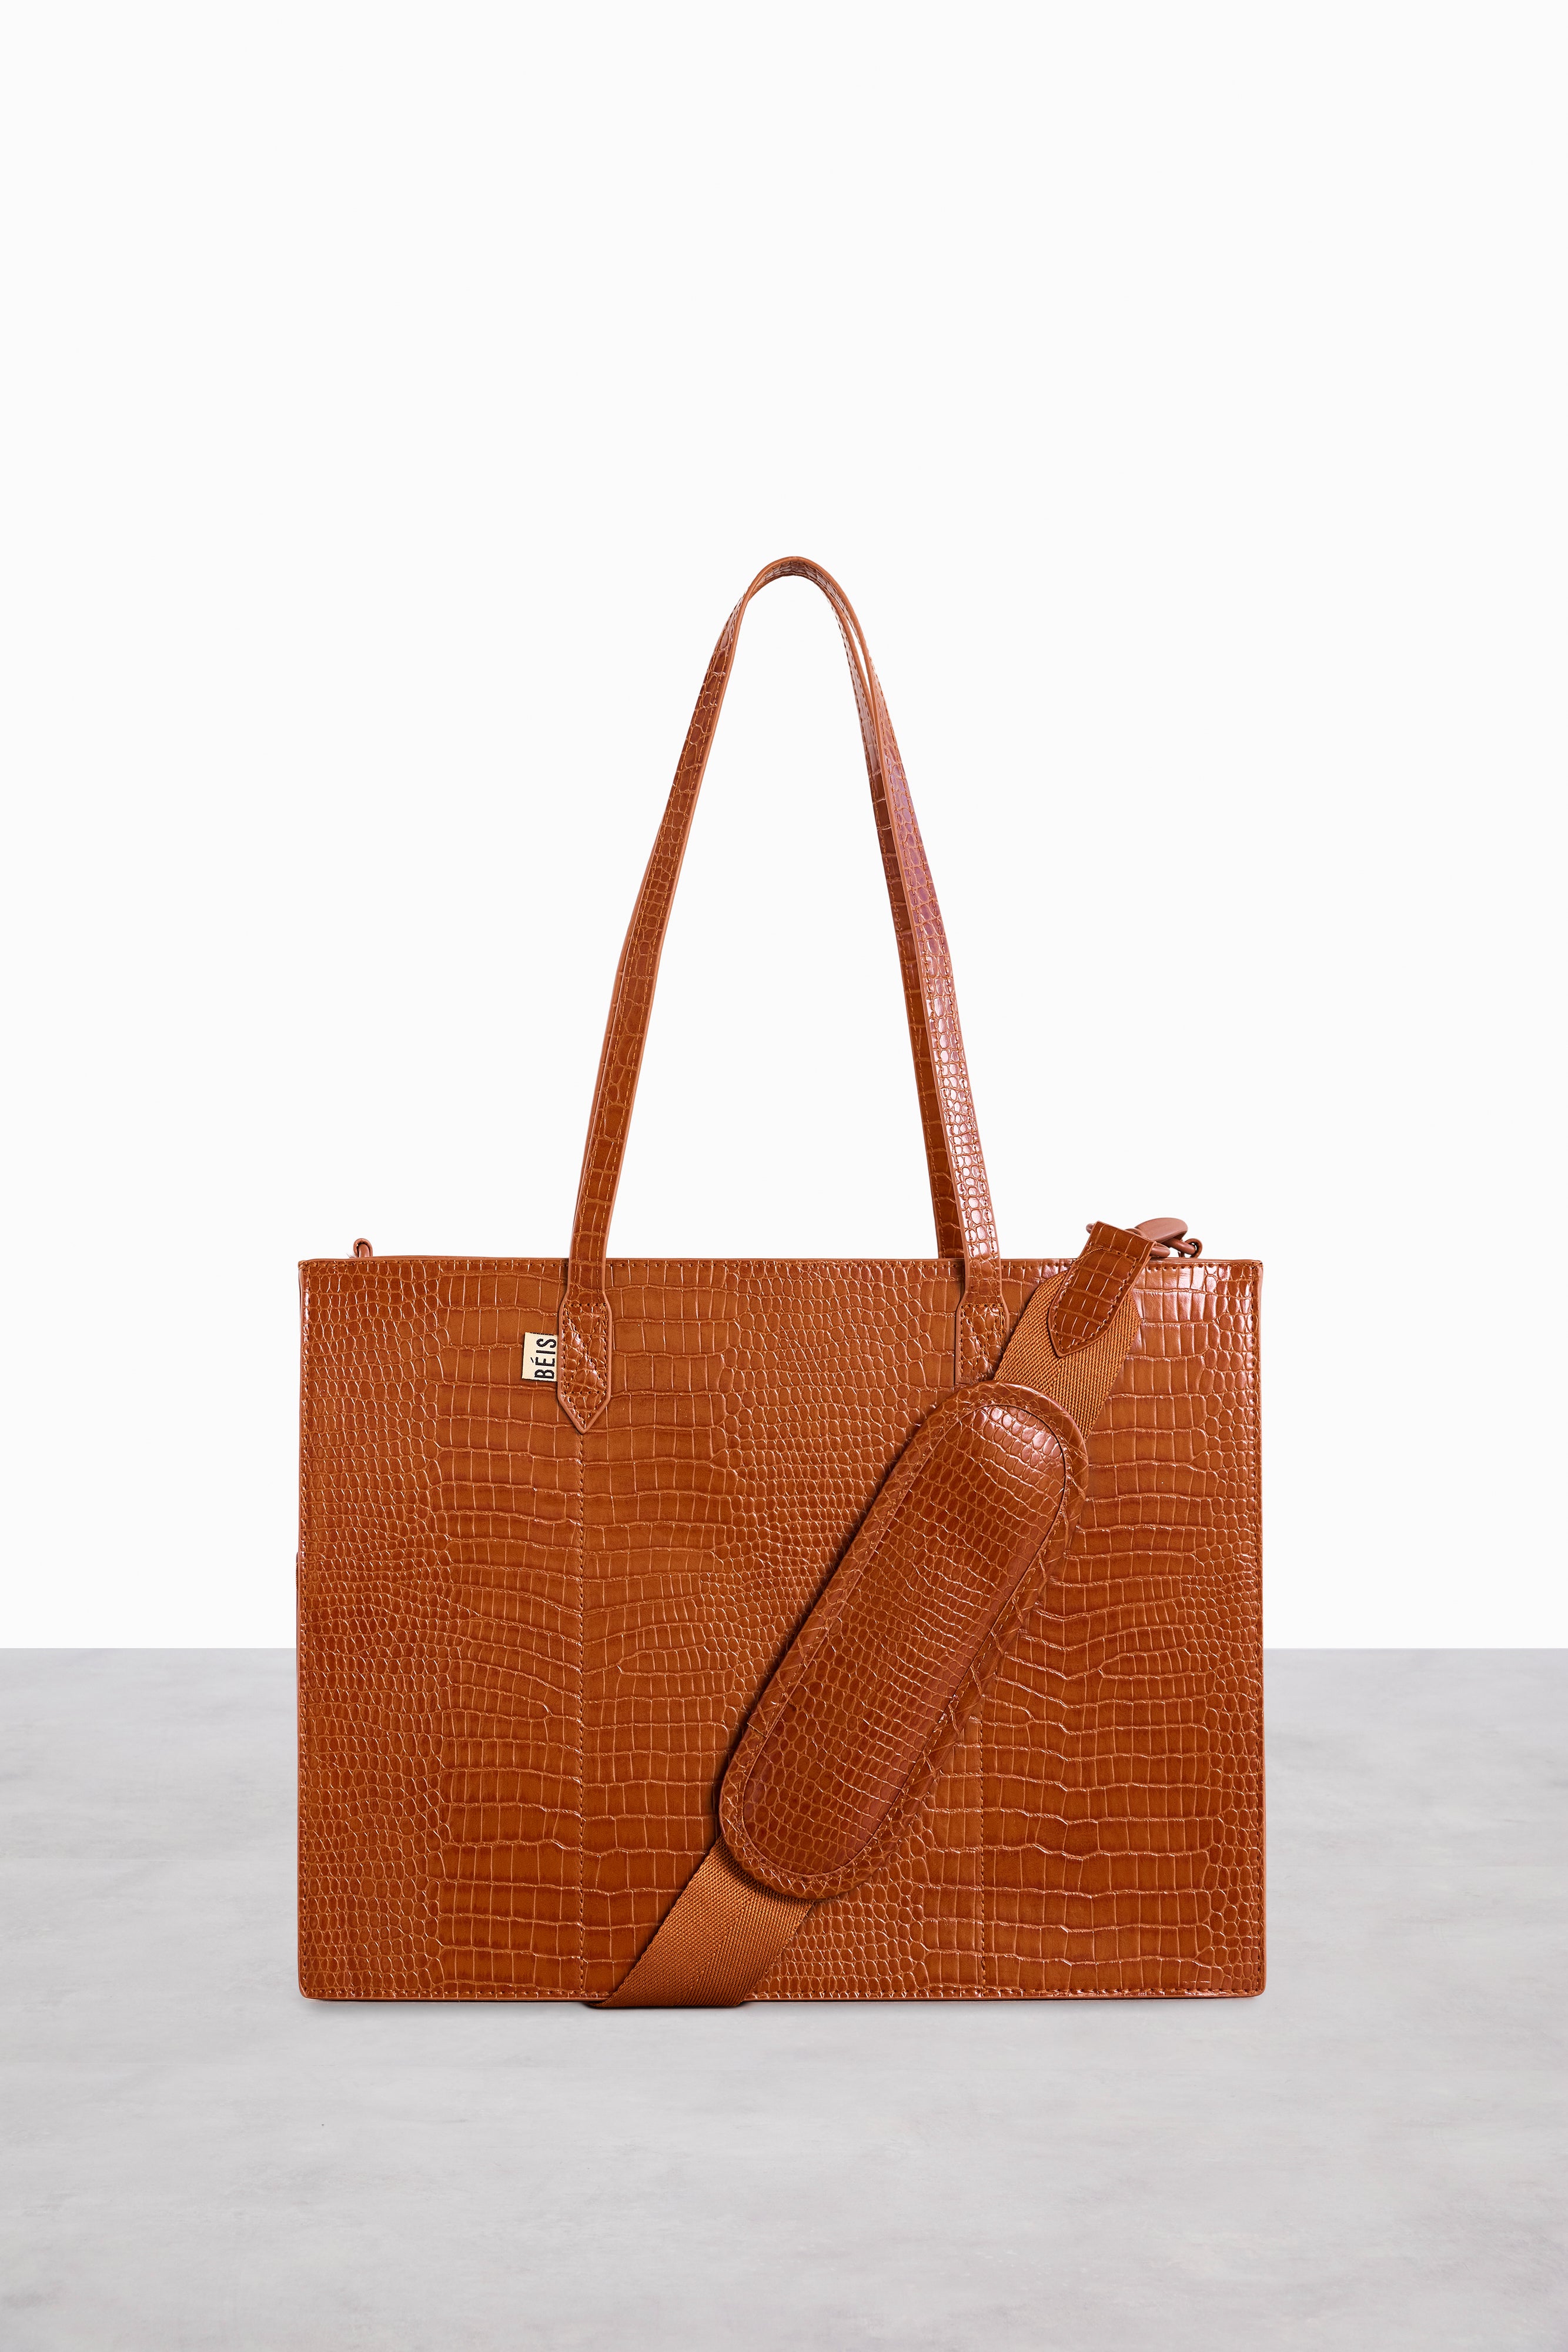 Luxury DIY Paper Tote Shoulder Bags For Ladies PVC Bag Kit Crossbody Bag  Phone Small Purses Handbags Big Brand Paper Bag - AliExpress